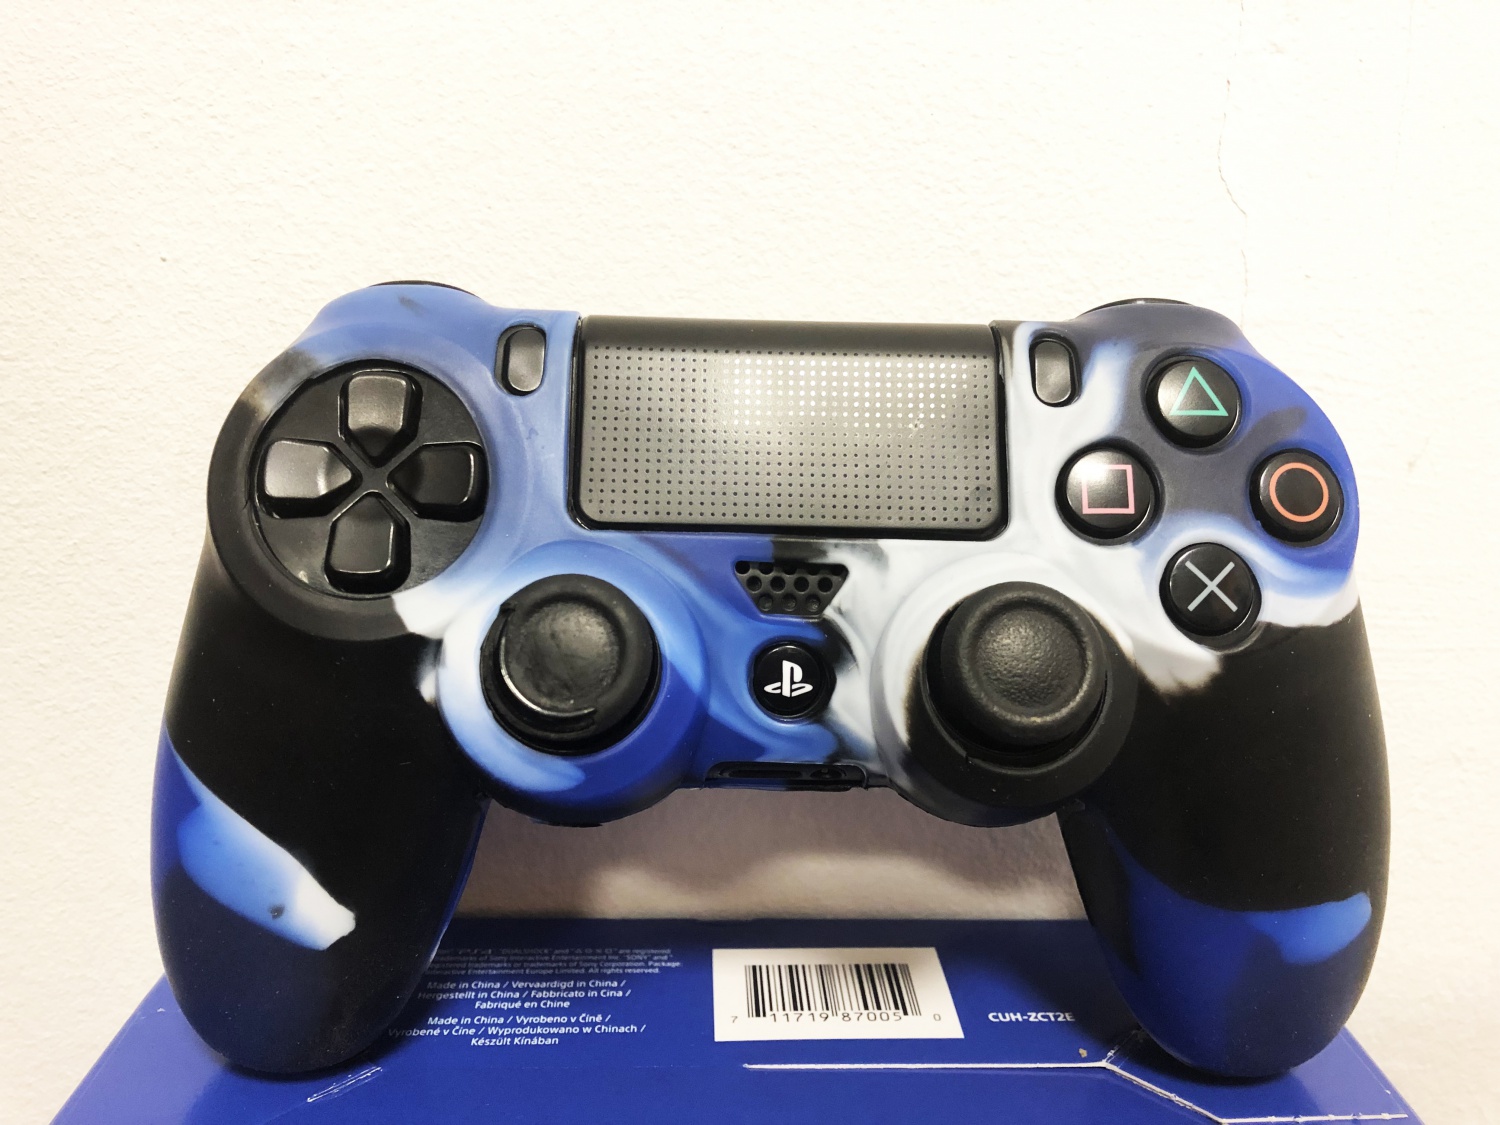 PS4 Силиконовый футляр для контроллера (синий камуфляж)